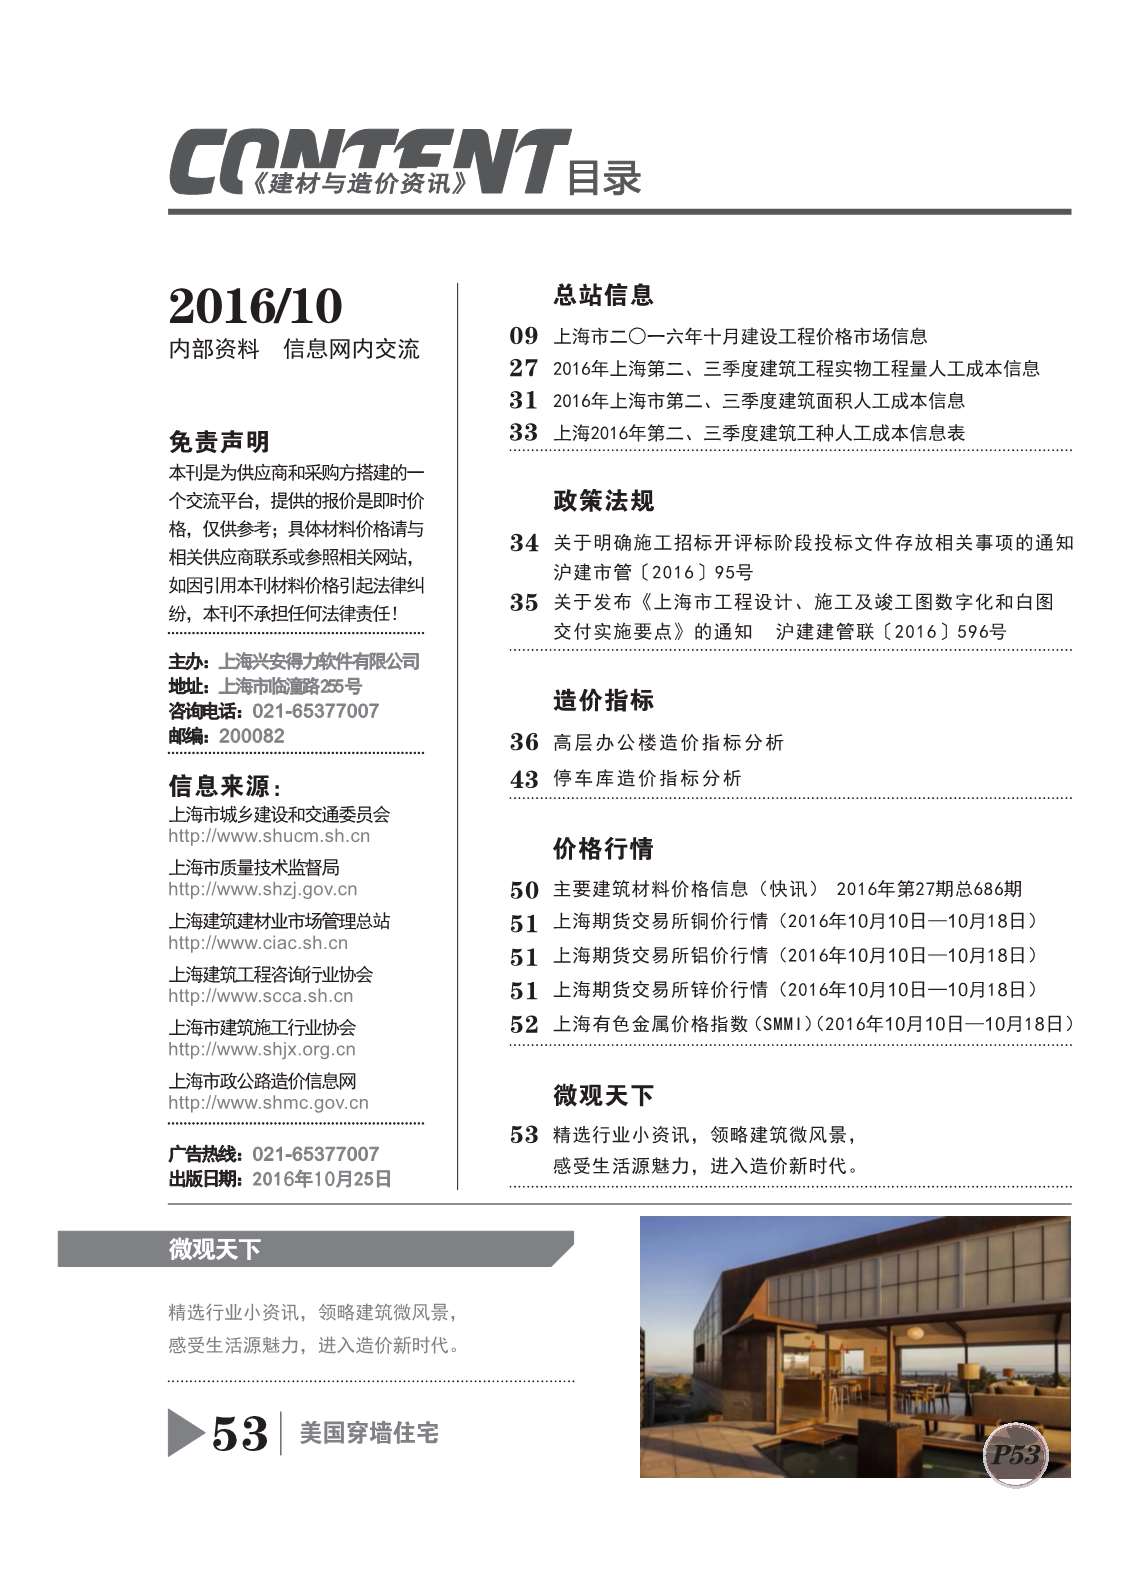 上海市2016年10月建设工程造价信息